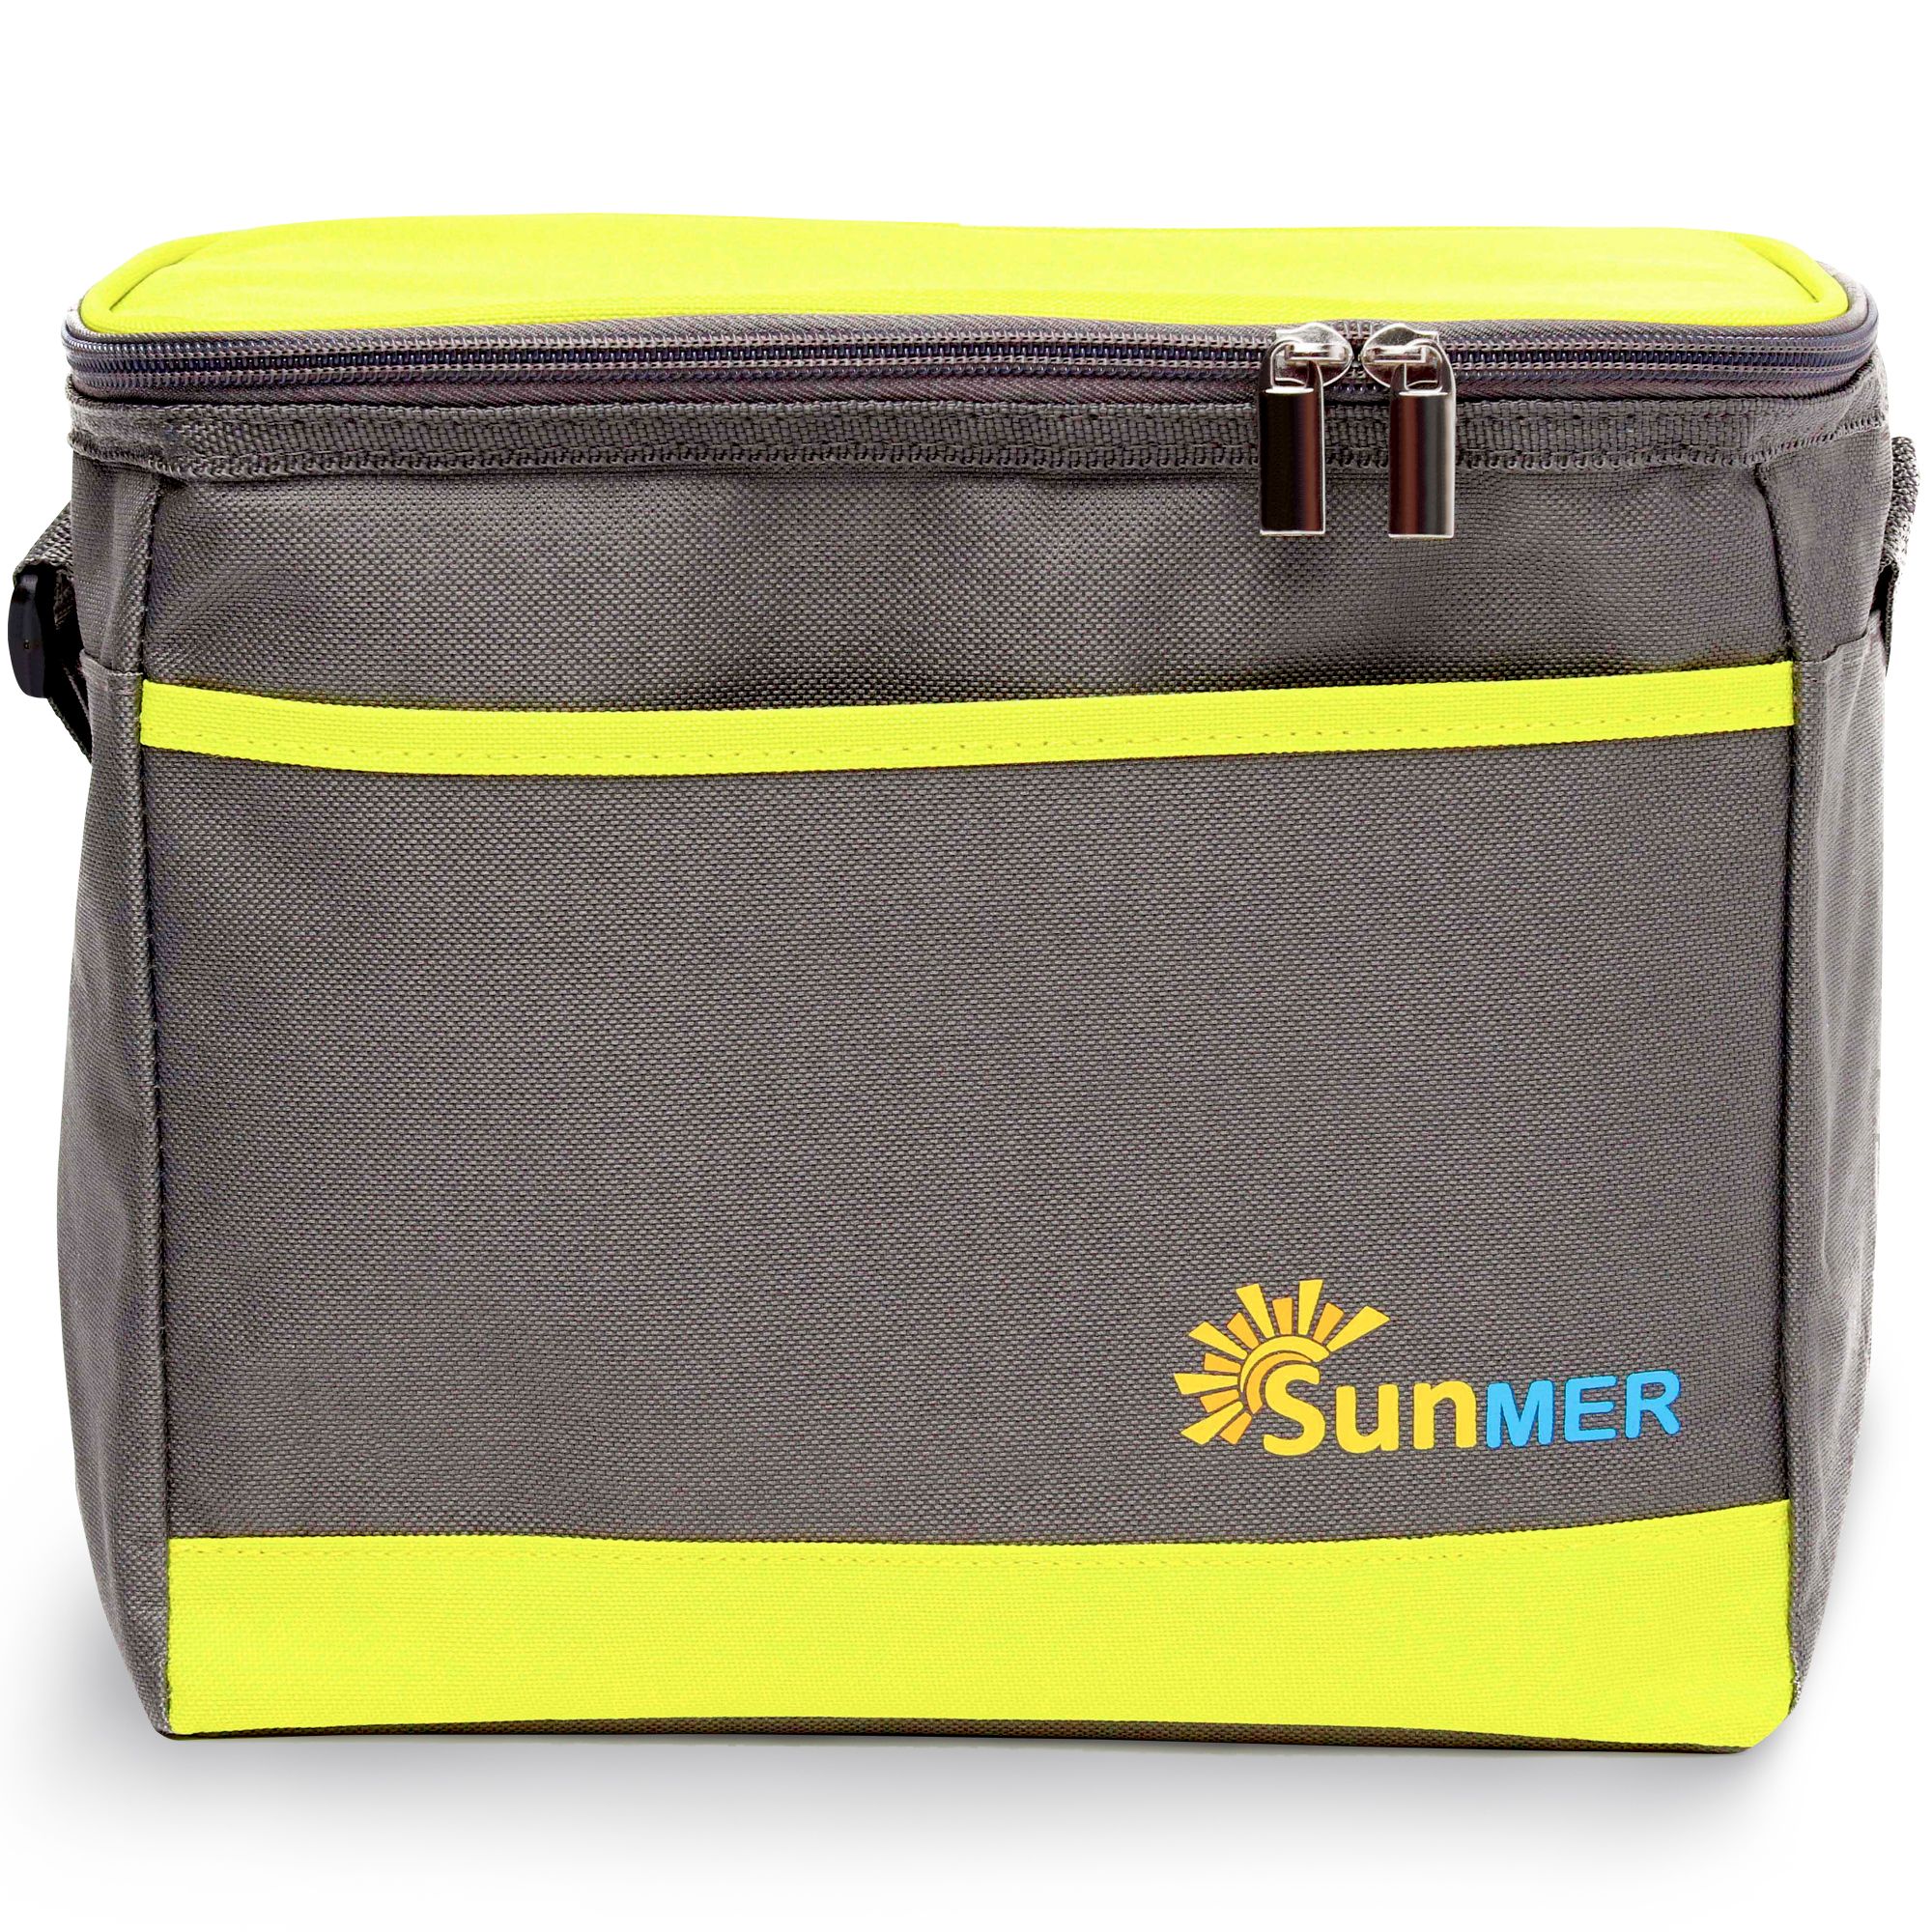 9L Cooler Bag With Shoulder Strap - Grey & Lime